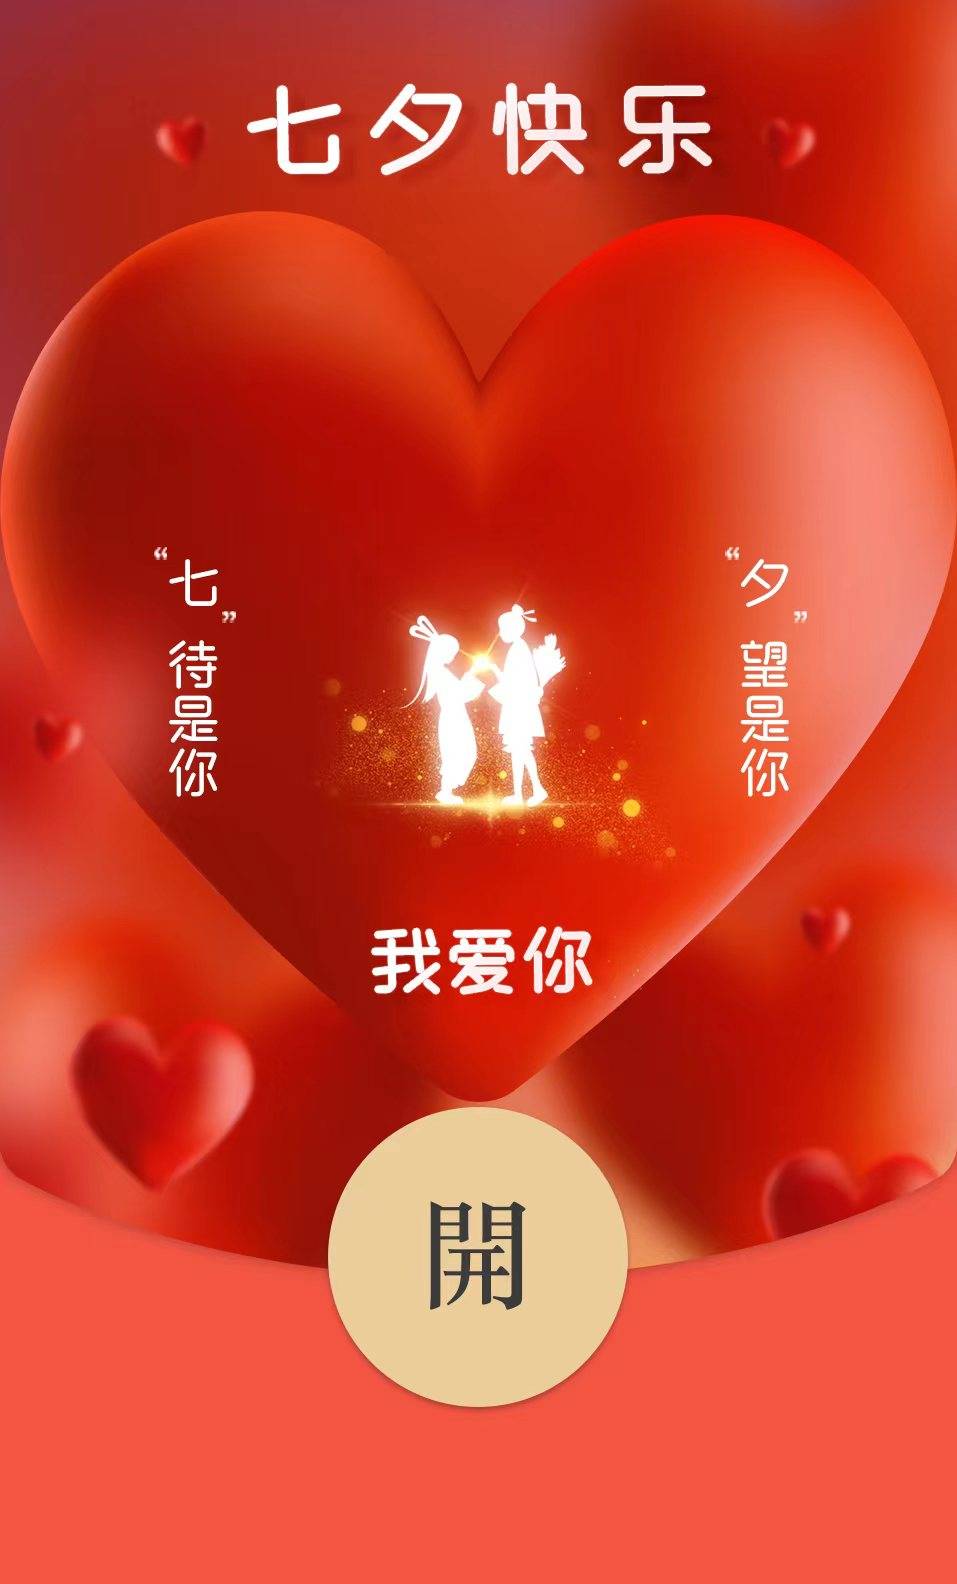 情人节专属红包封面图片